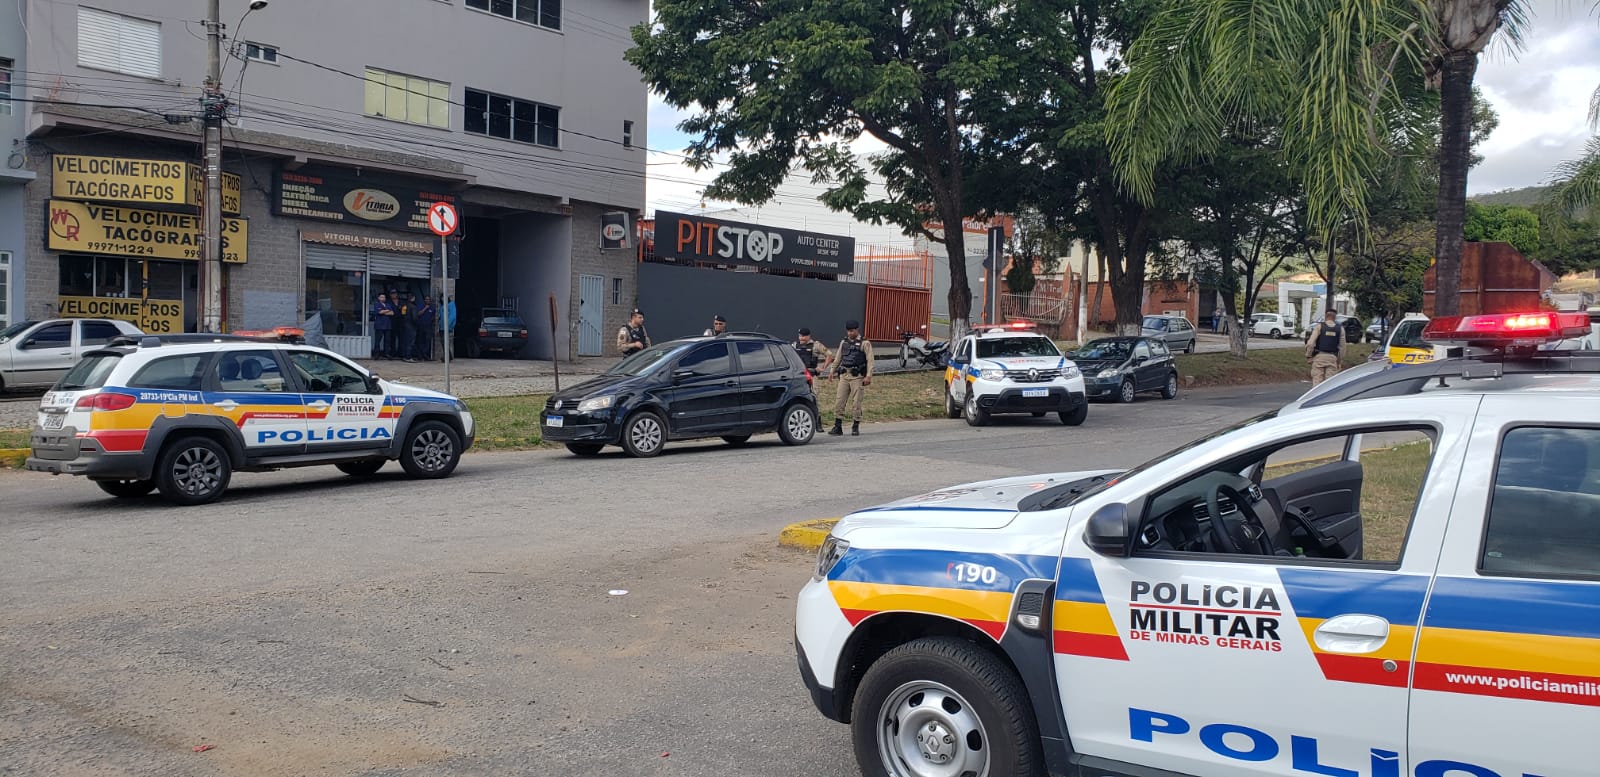 Carro roubado em Itaúna é recuperado pela Polícia Militar nesta quarta-feira (25), em Pará de Minas